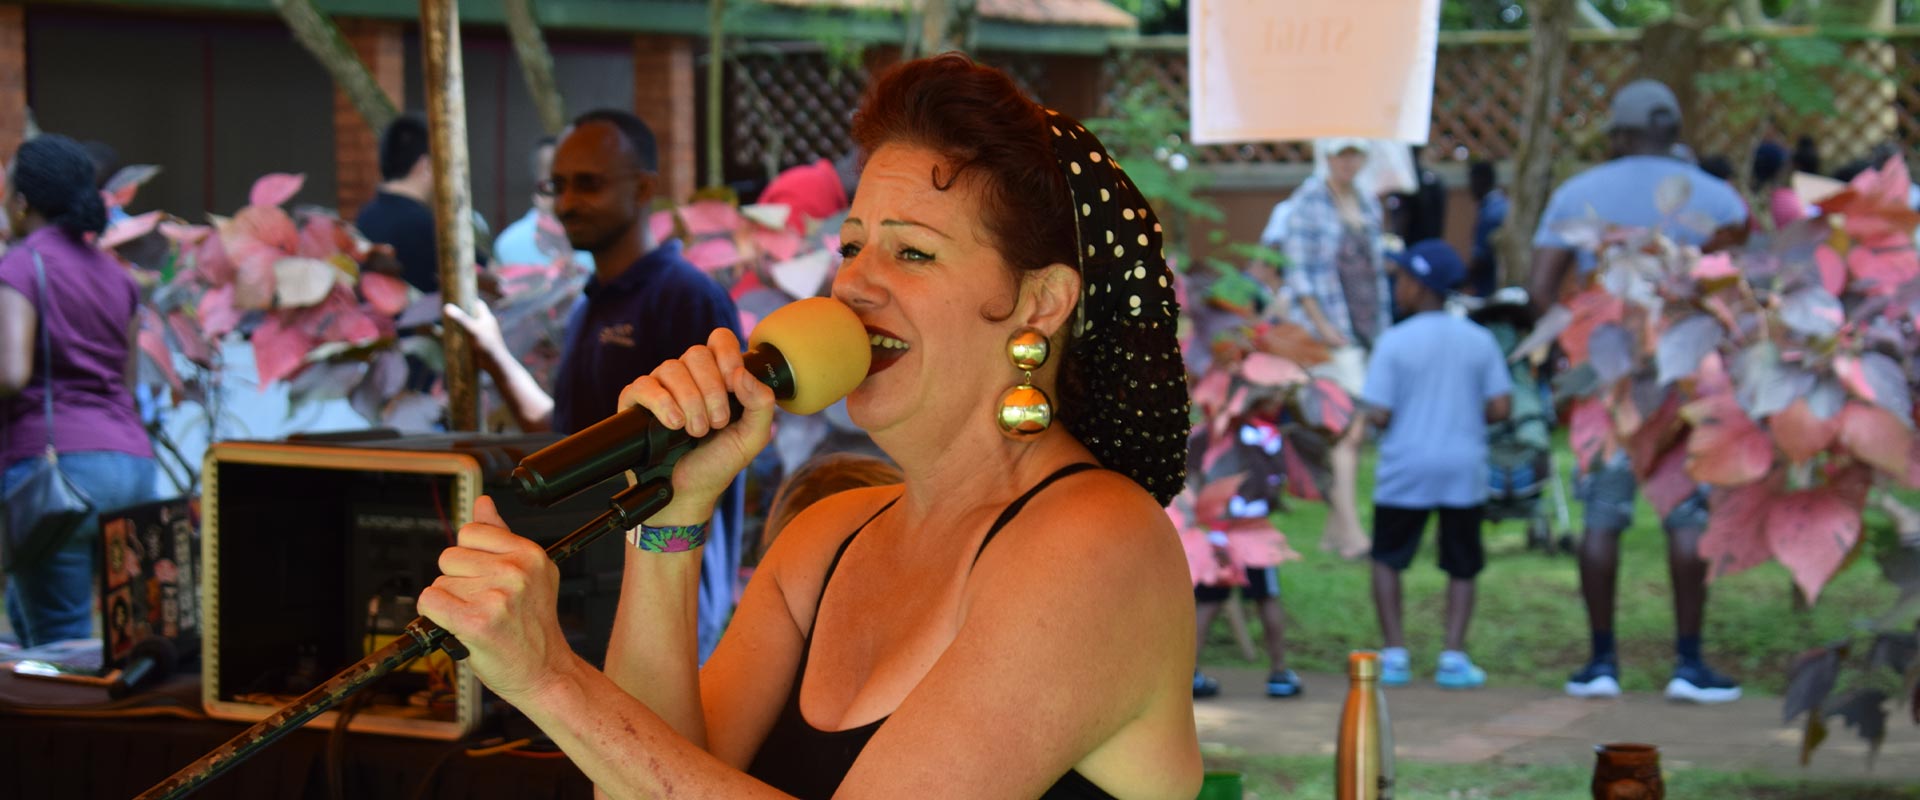 Woman singing at an ISU PTA event